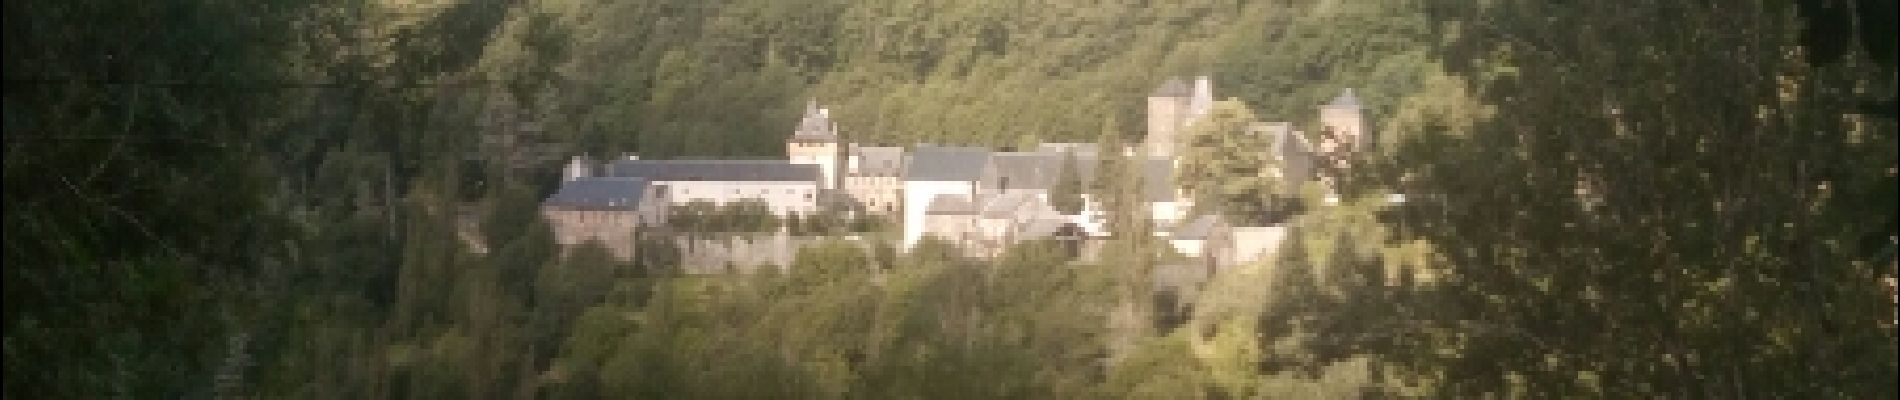 Excursión Senderismo Le Cayrol - Abbaye de Bonneval - La Bastide d'Aubrac - Photo